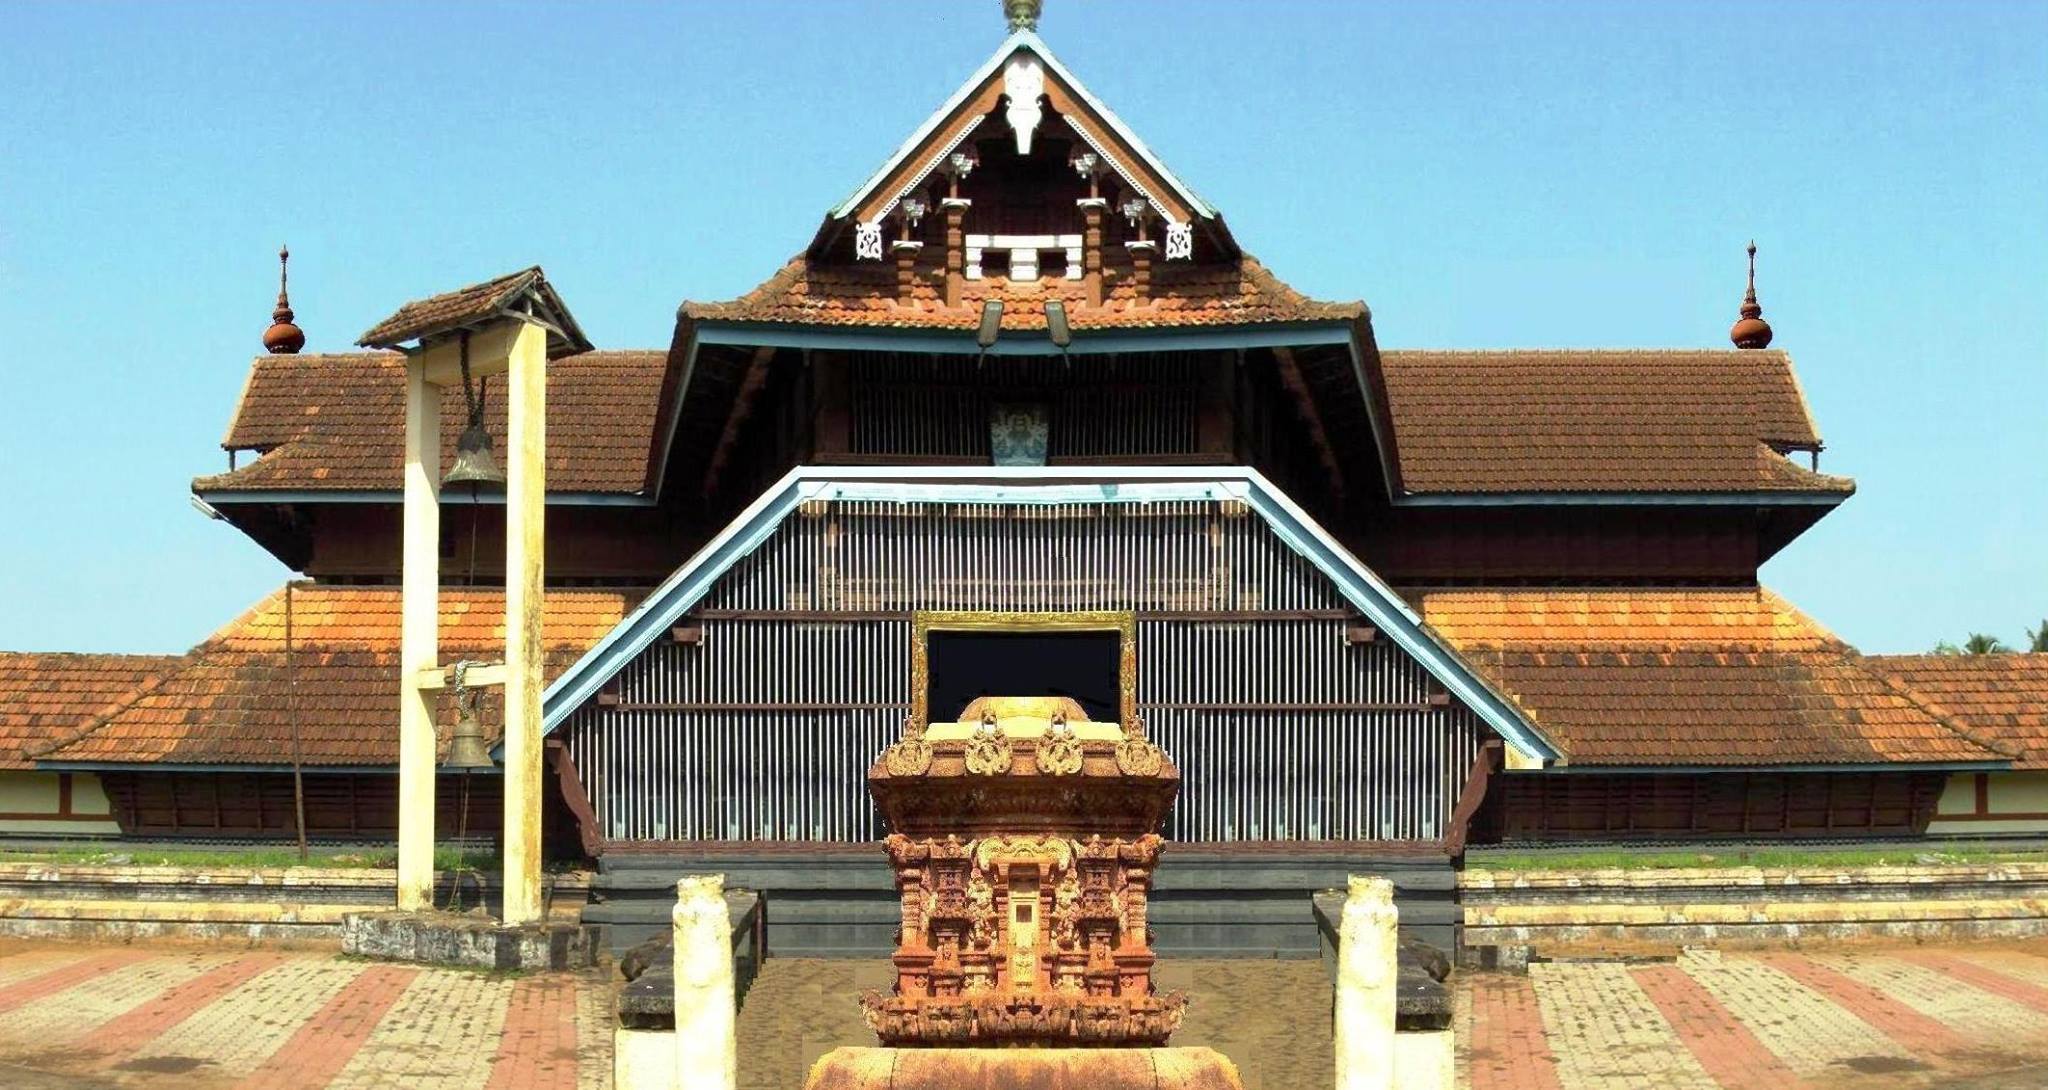 Vazhappally Maha Siva Temple in Kerala